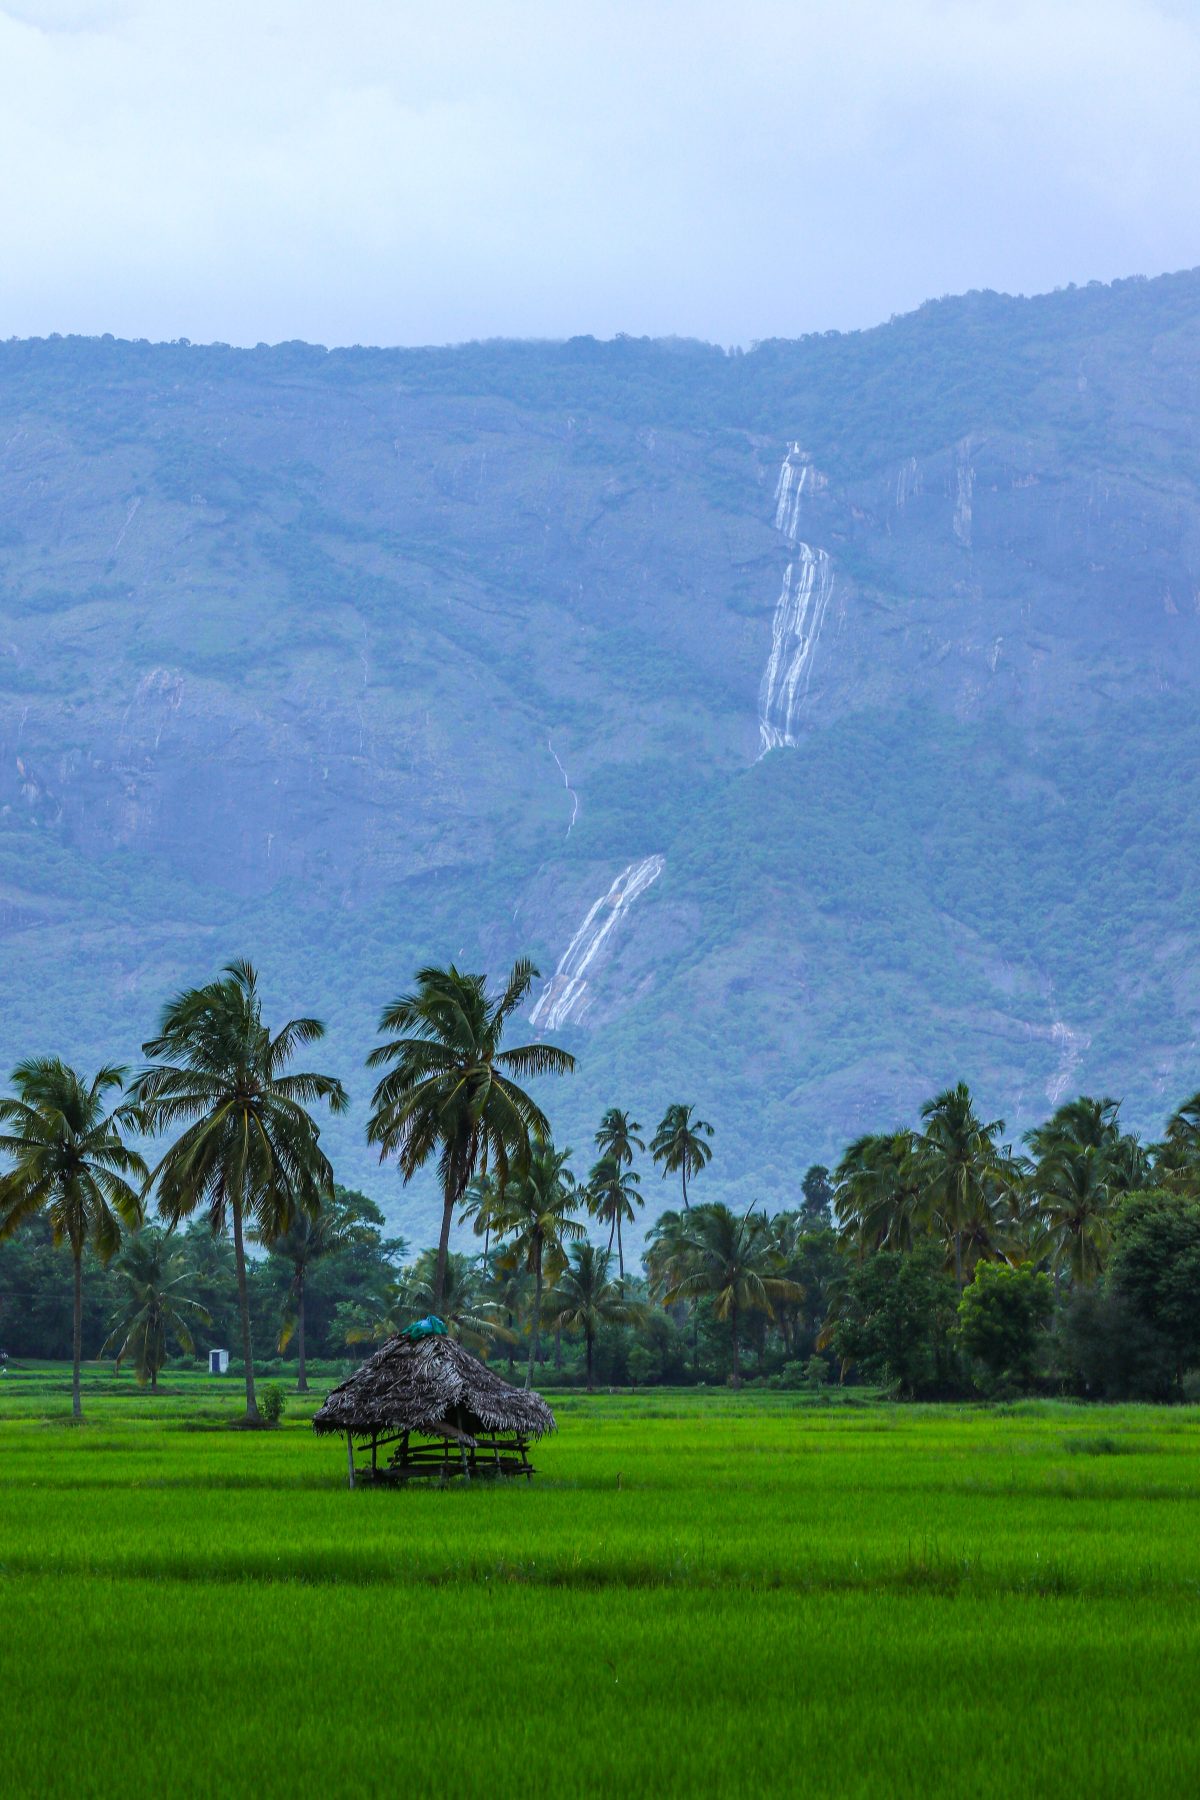 Indian rural landscape